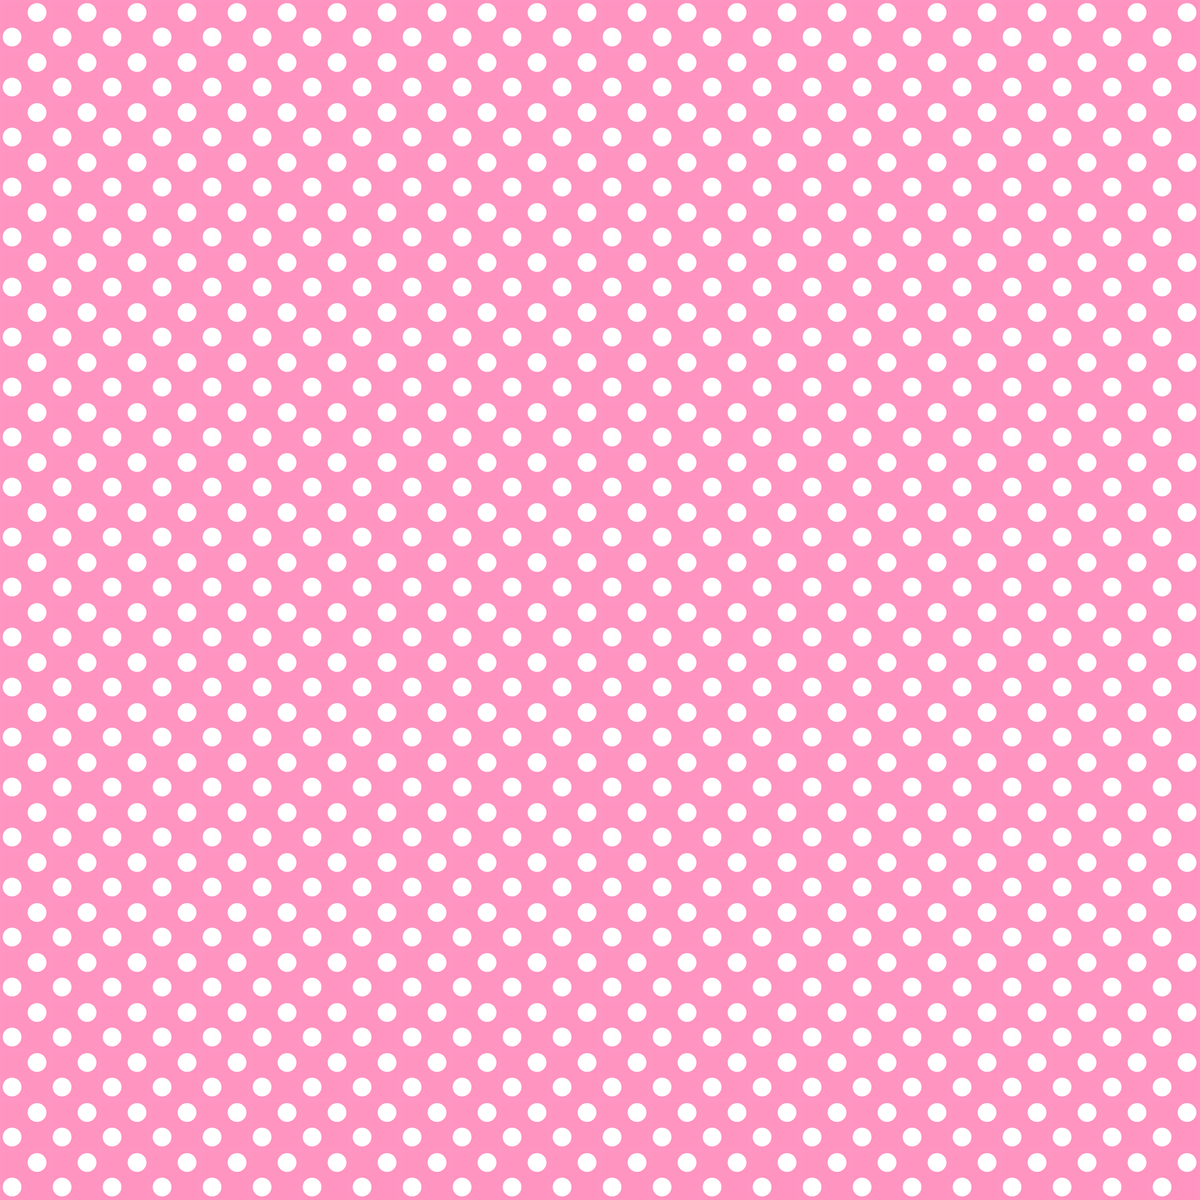 6-best-images-of-light-pink-polka-dot-paper-printable-pink-polka-dot